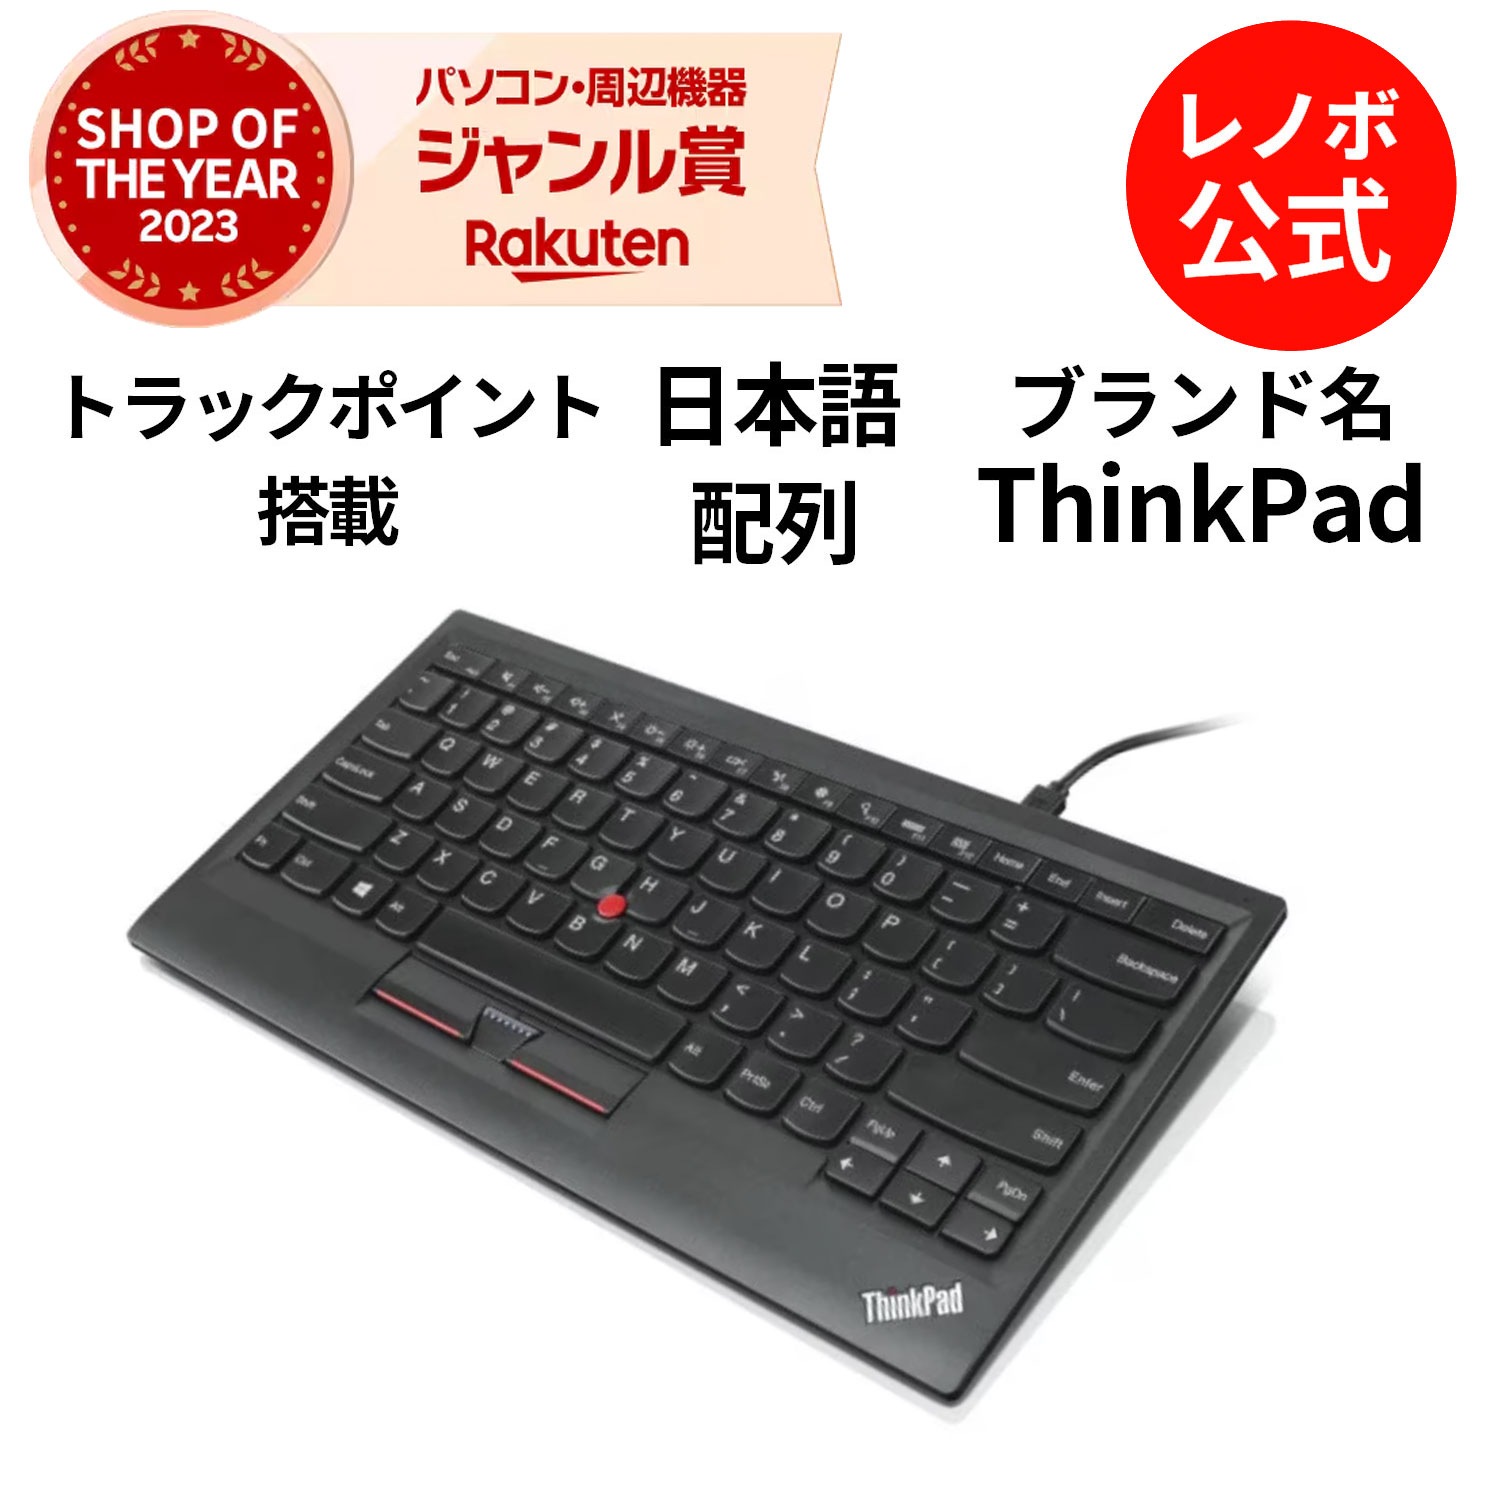 ThinkPad トラックポイント・キーボード-日本語